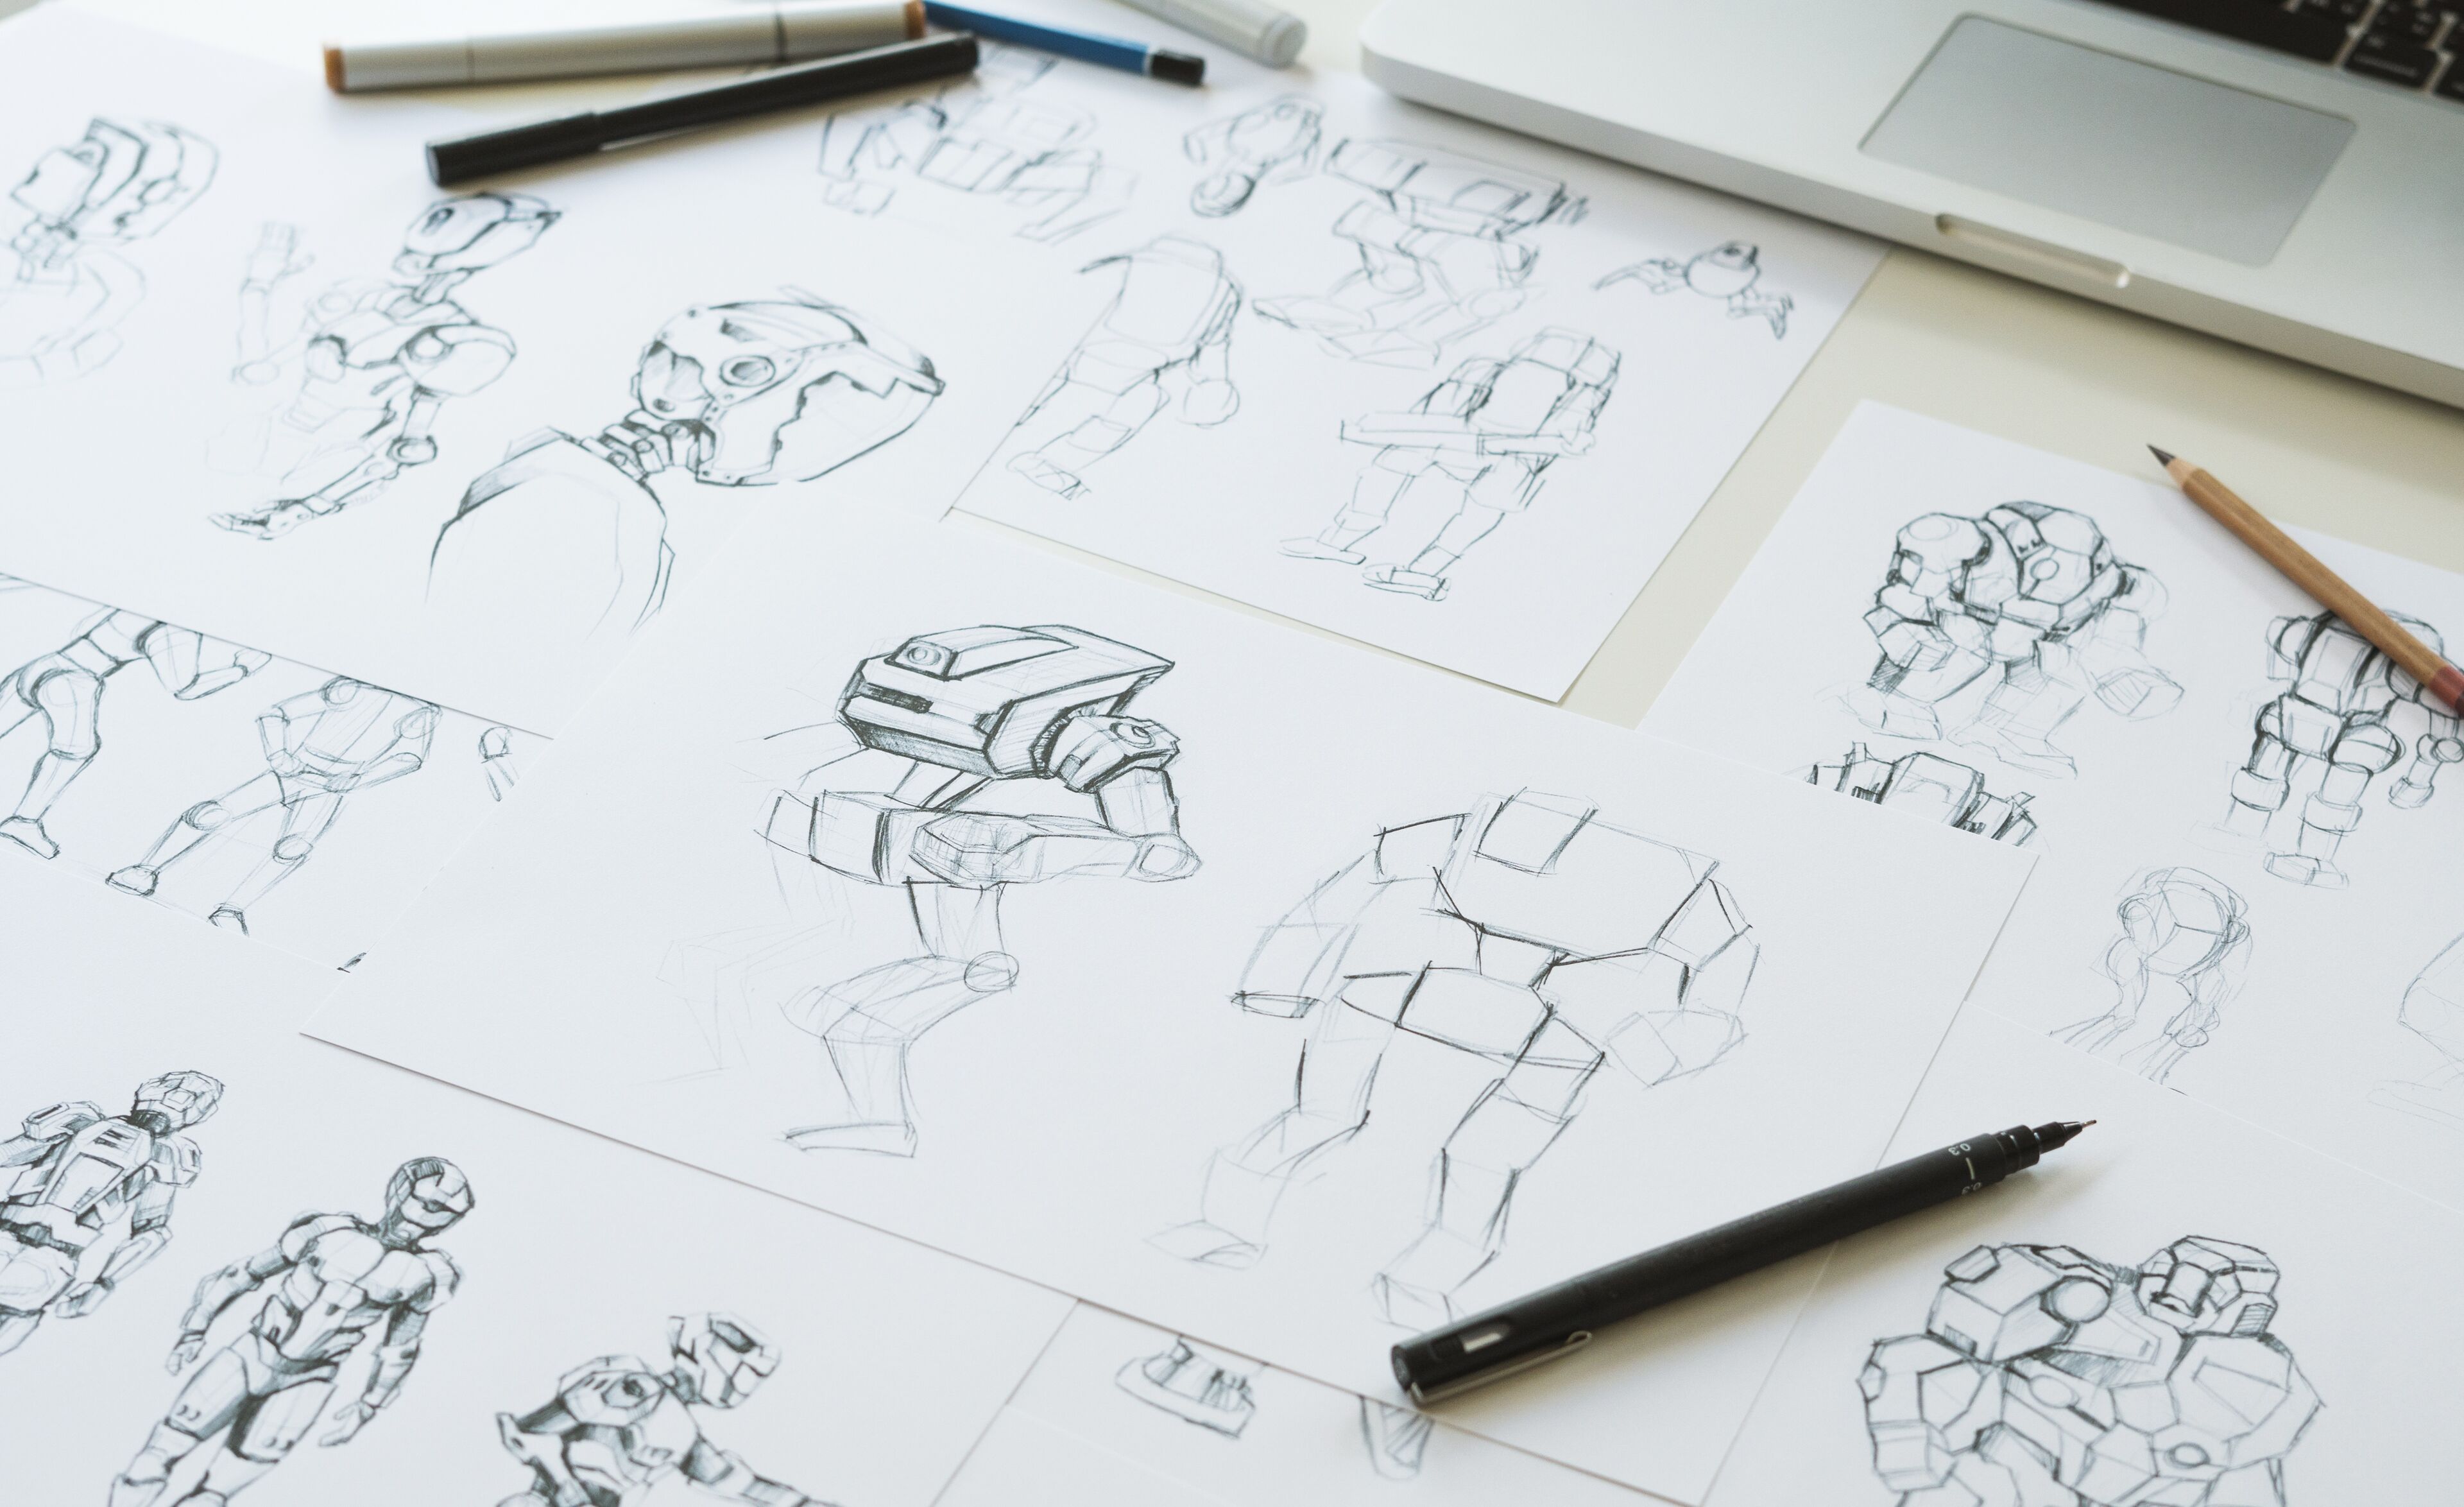 Múltiples bocetos de un personaje robot en varias poses esparcidos por el espacio de trabajo de un diseñador, ilustrando el proceso de desarrollo de conceptos.